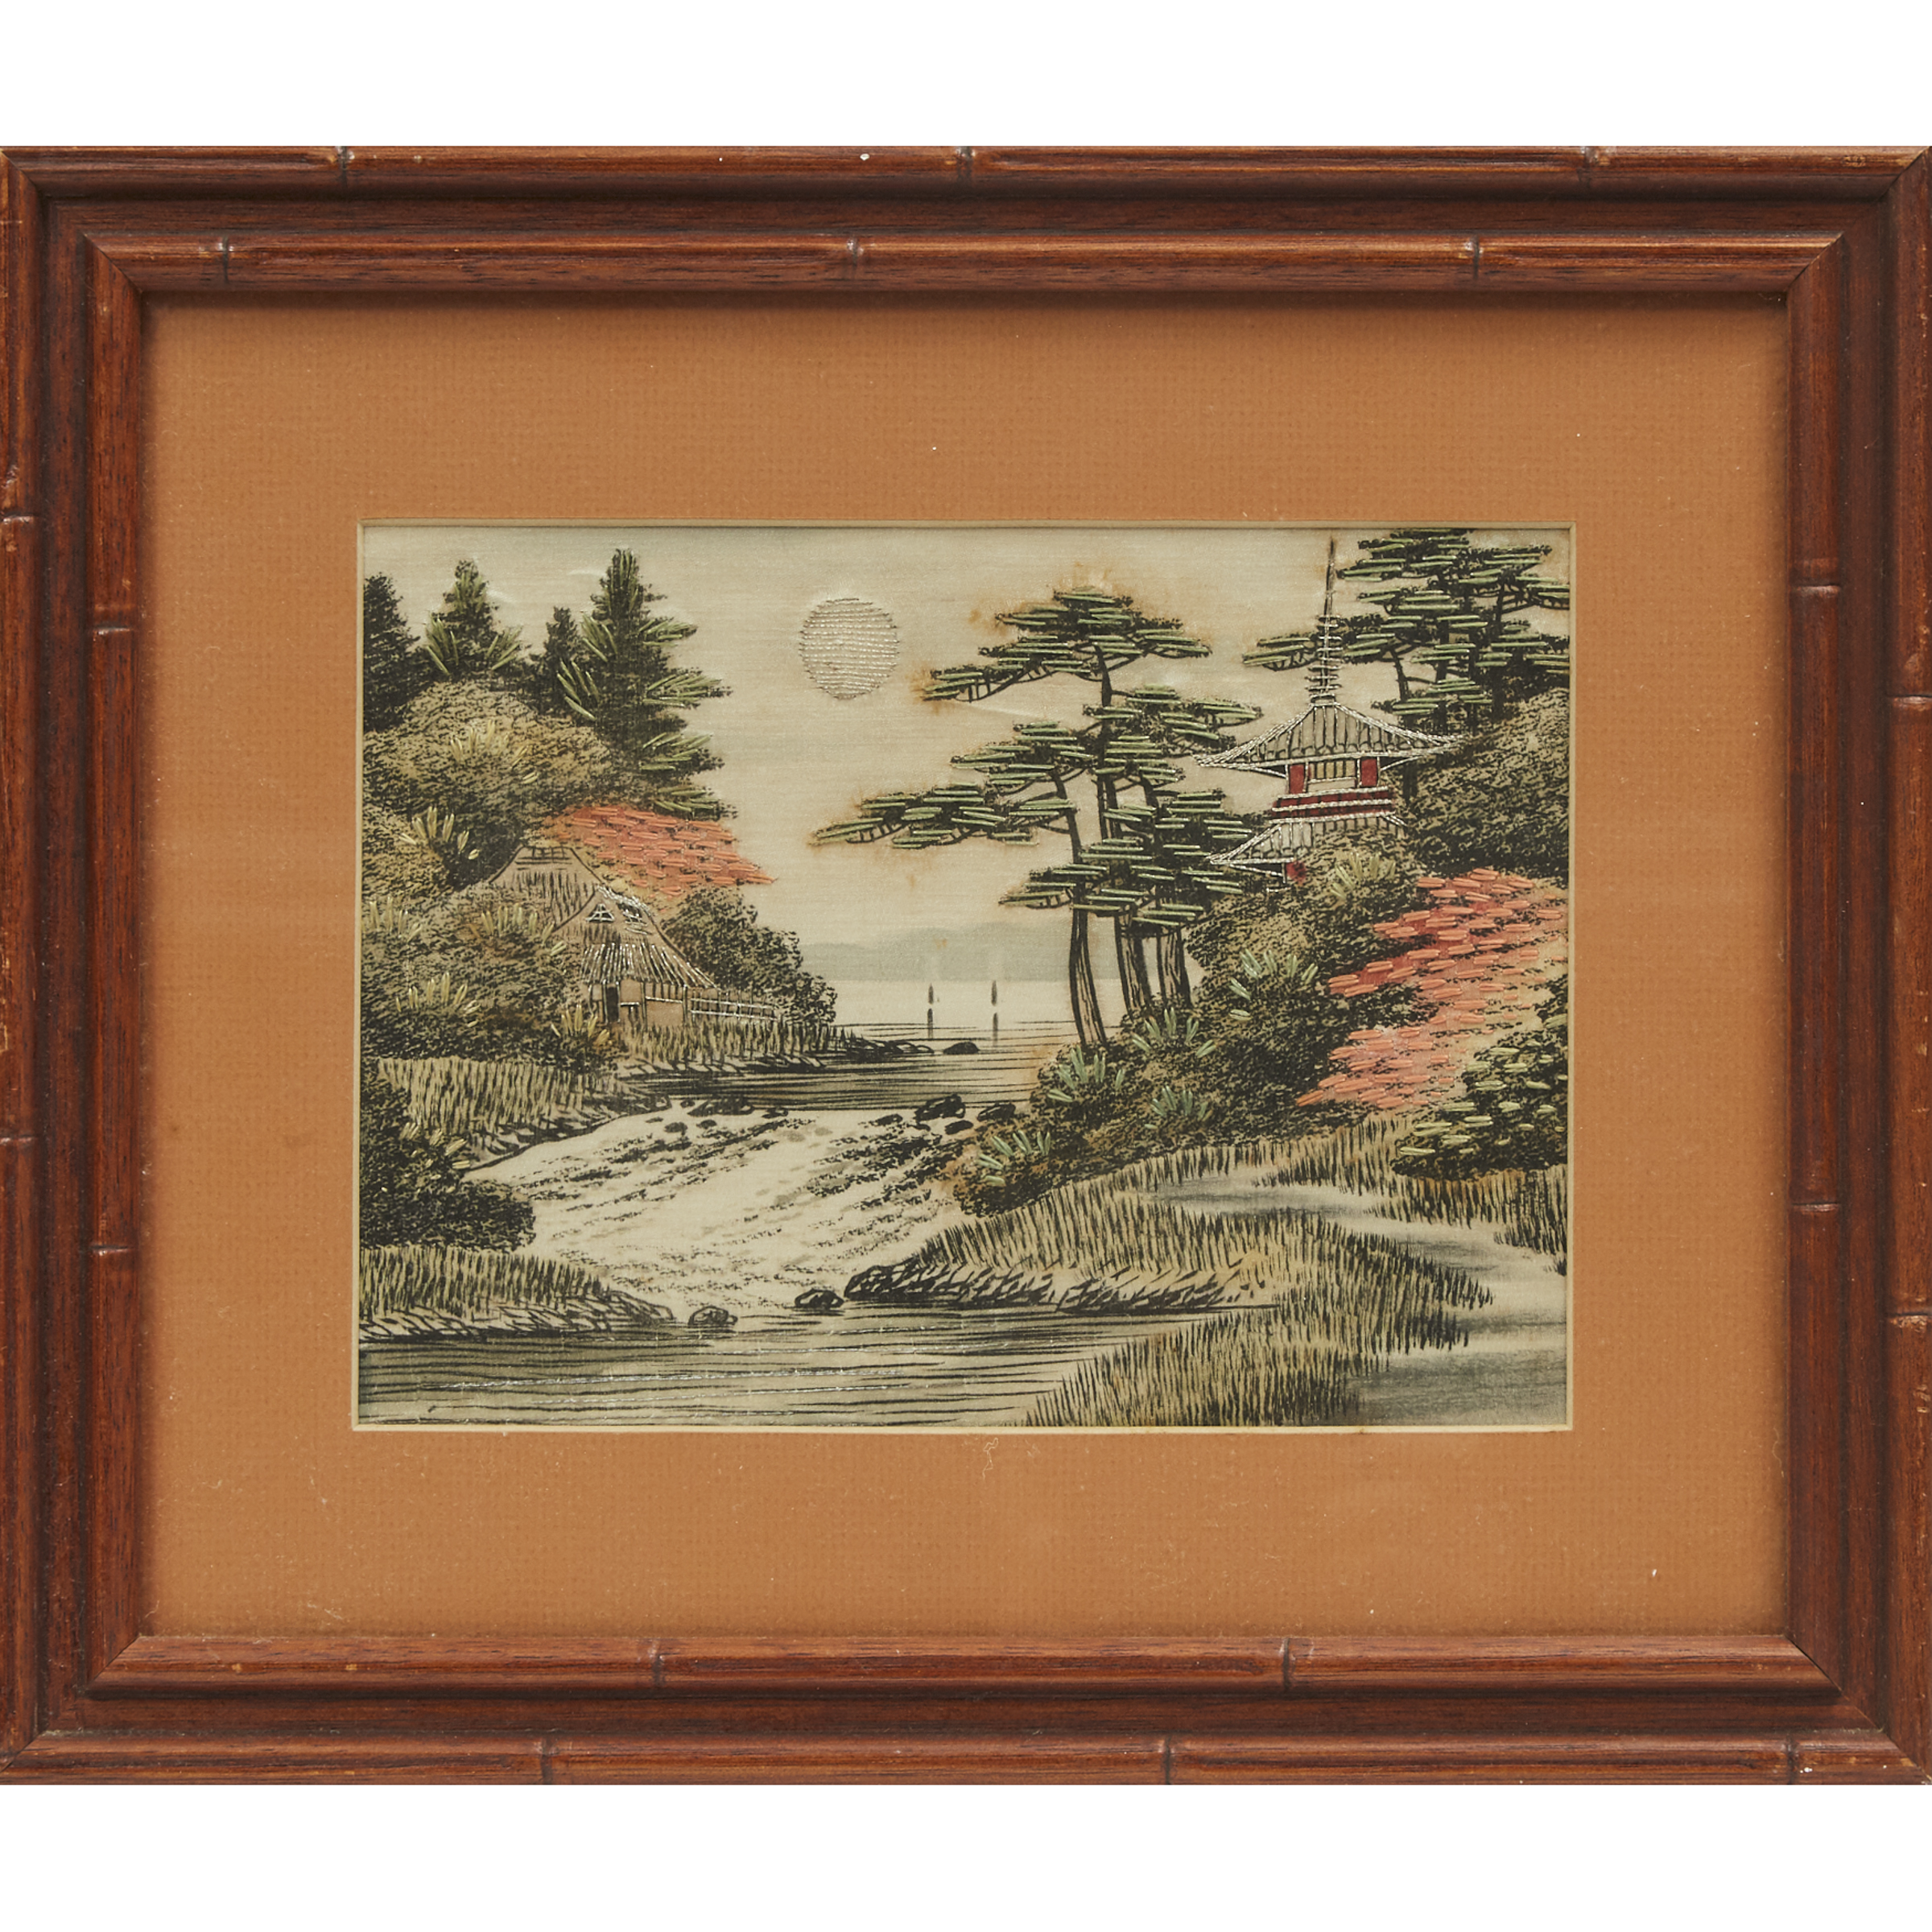 Two Framed Embroidered Landscape Panels